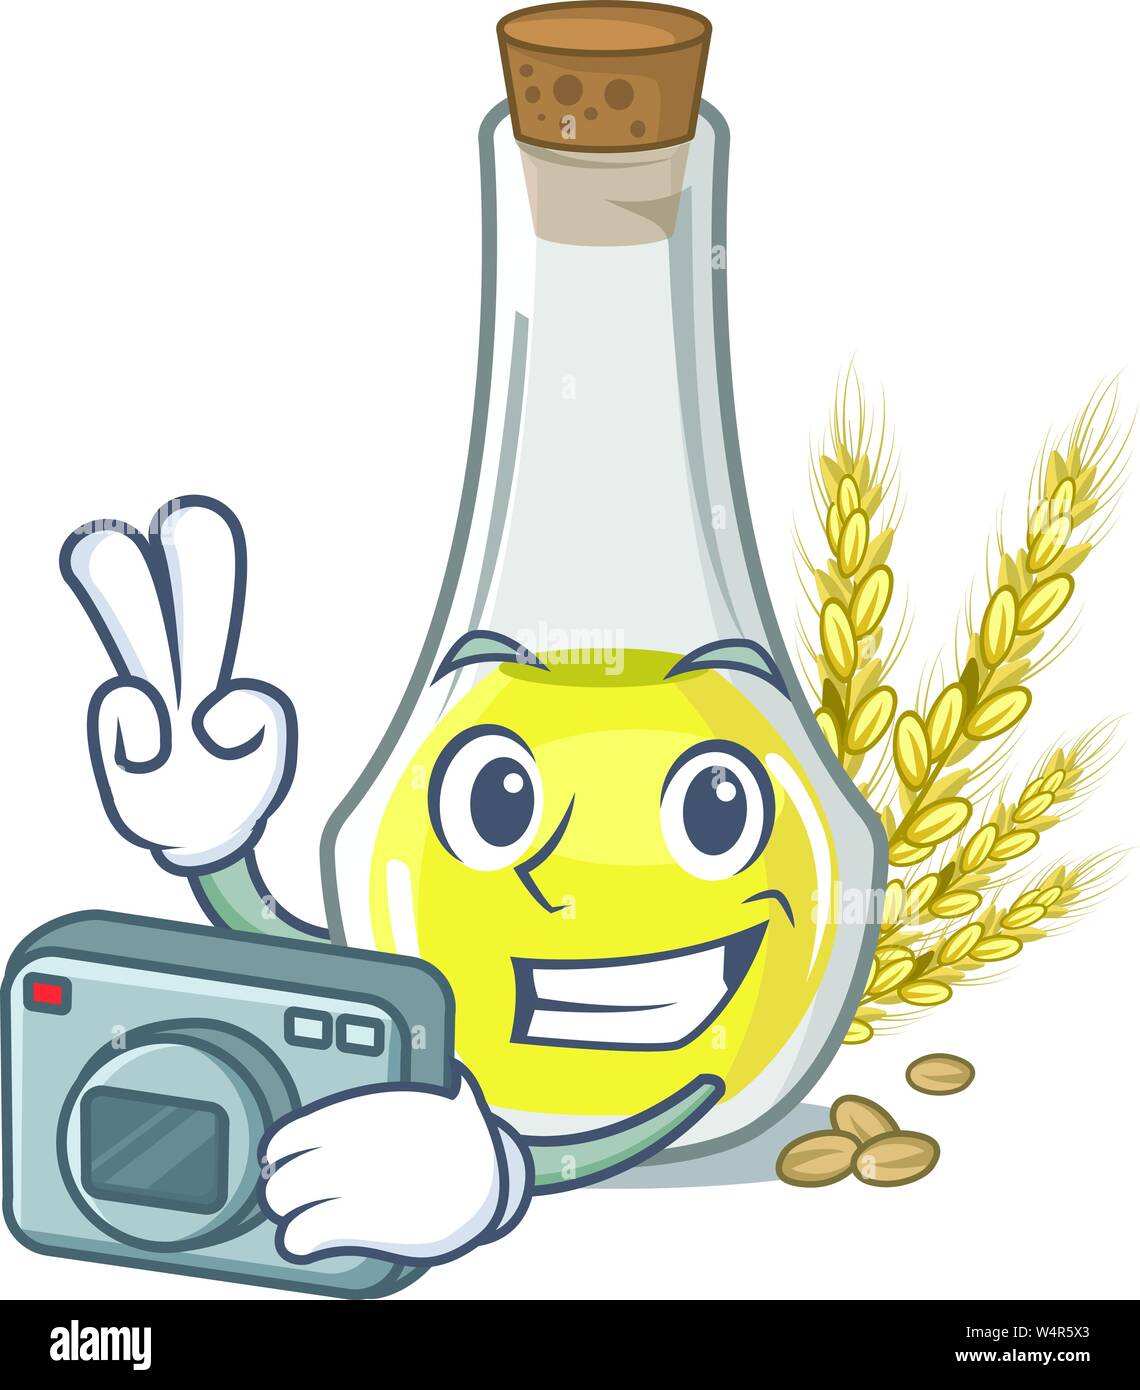 Photographer wheat germ oil in a cartoon vector illustration Stock Vector